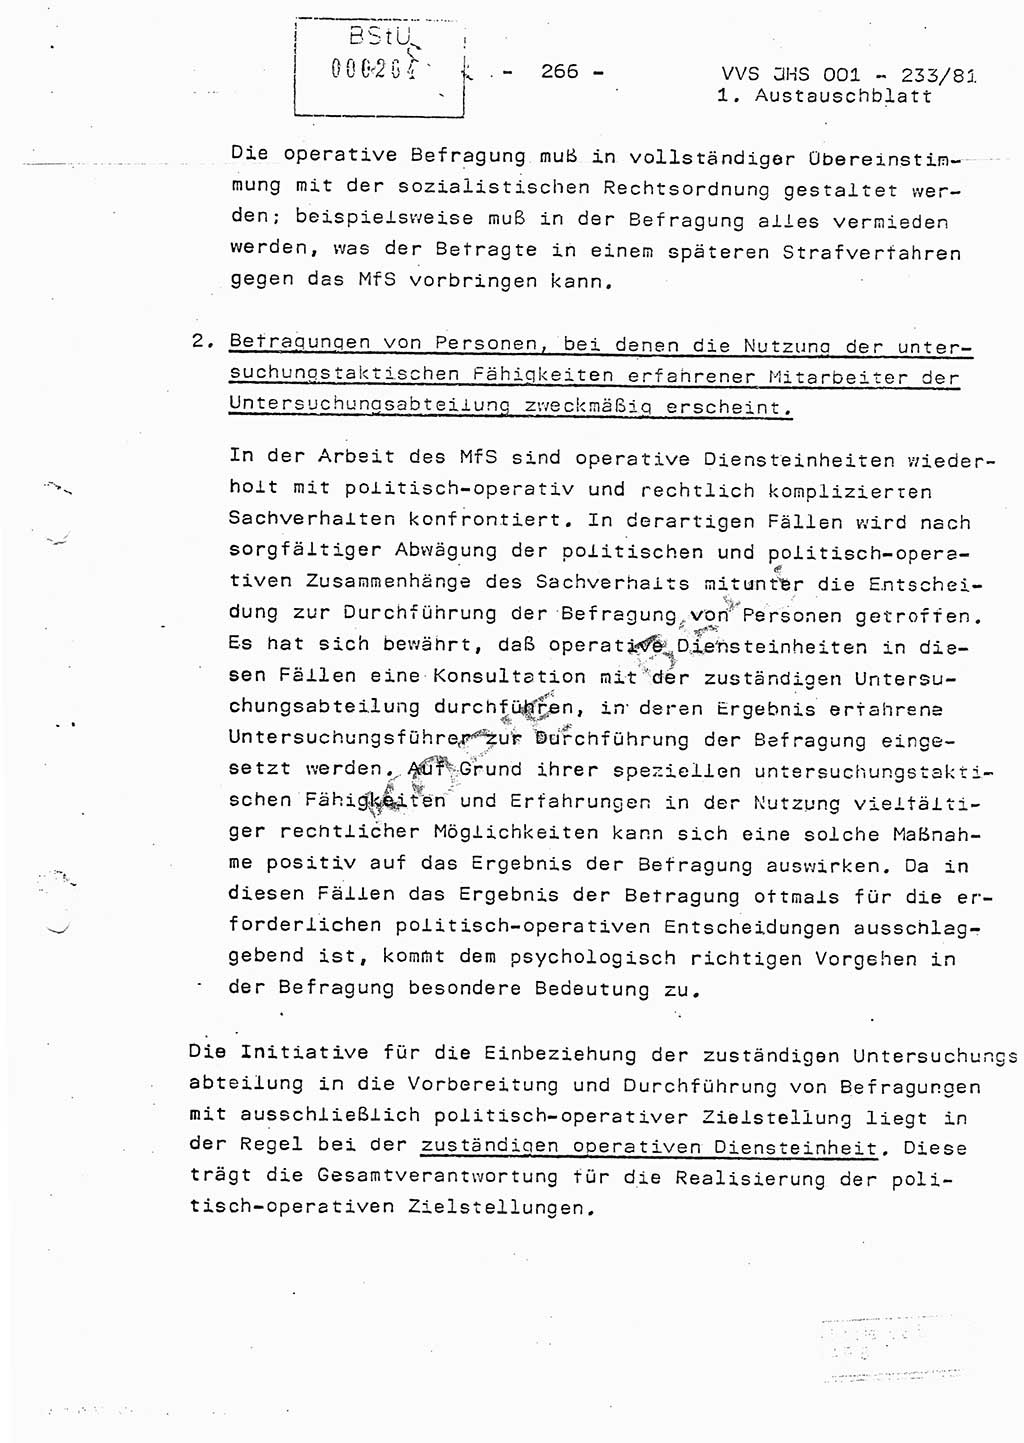 Dissertation Oberstleutnant Horst Zank (JHS), Oberstleutnant Dr. Karl-Heinz Knoblauch (JHS), Oberstleutnant Gustav-Adolf Kowalewski (HA Ⅸ), Oberstleutnant Wolfgang Plötner (HA Ⅸ), Ministerium für Staatssicherheit (MfS) [Deutsche Demokratische Republik (DDR)], Juristische Hochschule (JHS), Vertrauliche Verschlußsache (VVS) o001-233/81, Potsdam 1981, Blatt 266 (Diss. MfS DDR JHS VVS o001-233/81 1981, Bl. 266)